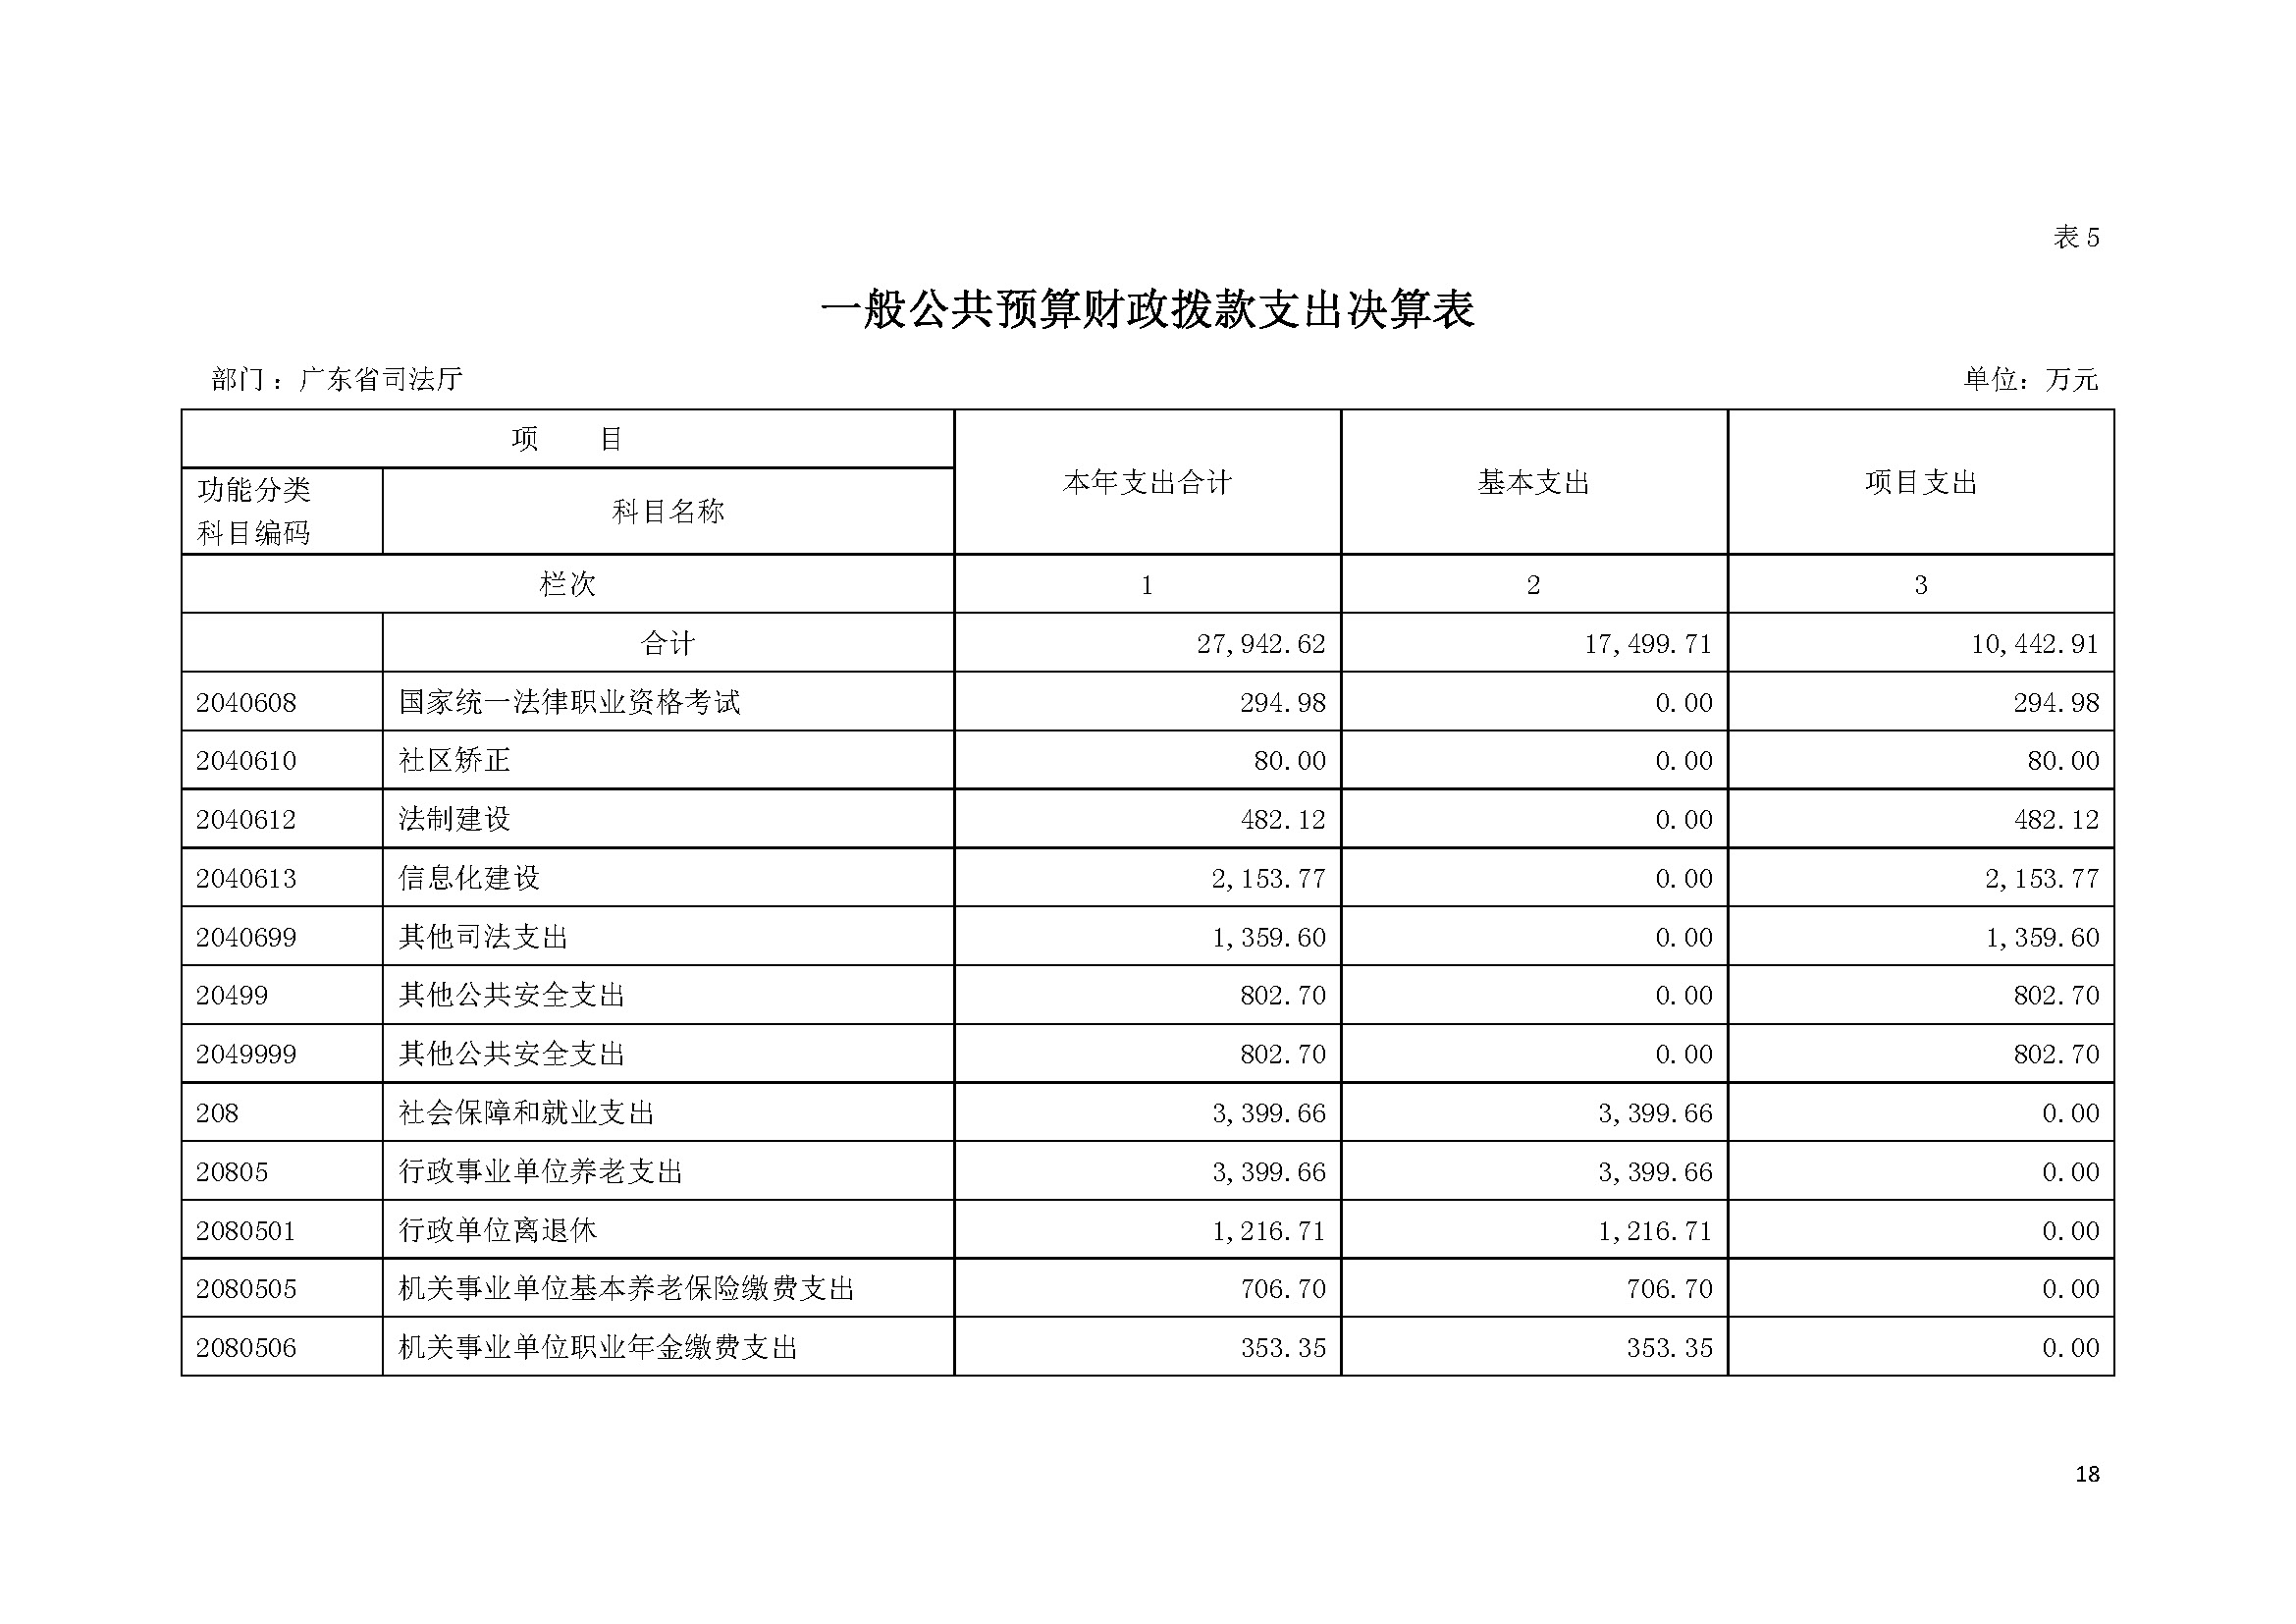 2021年广东省司法厅部门决算 _页面_18.jpg